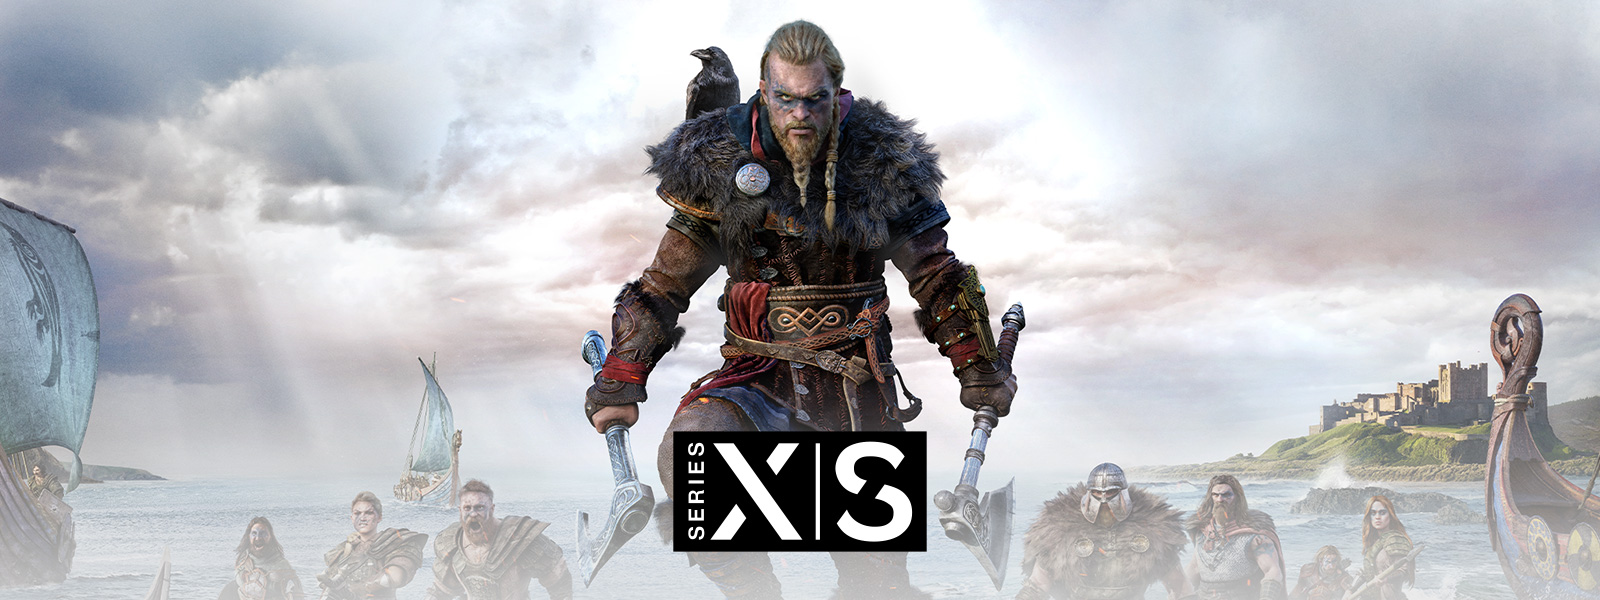 Assassin’s Creed Valhalla, Xbox Series X|S, Der legendäre Wikinger Eivor führt seine Armee in die Schlacht.